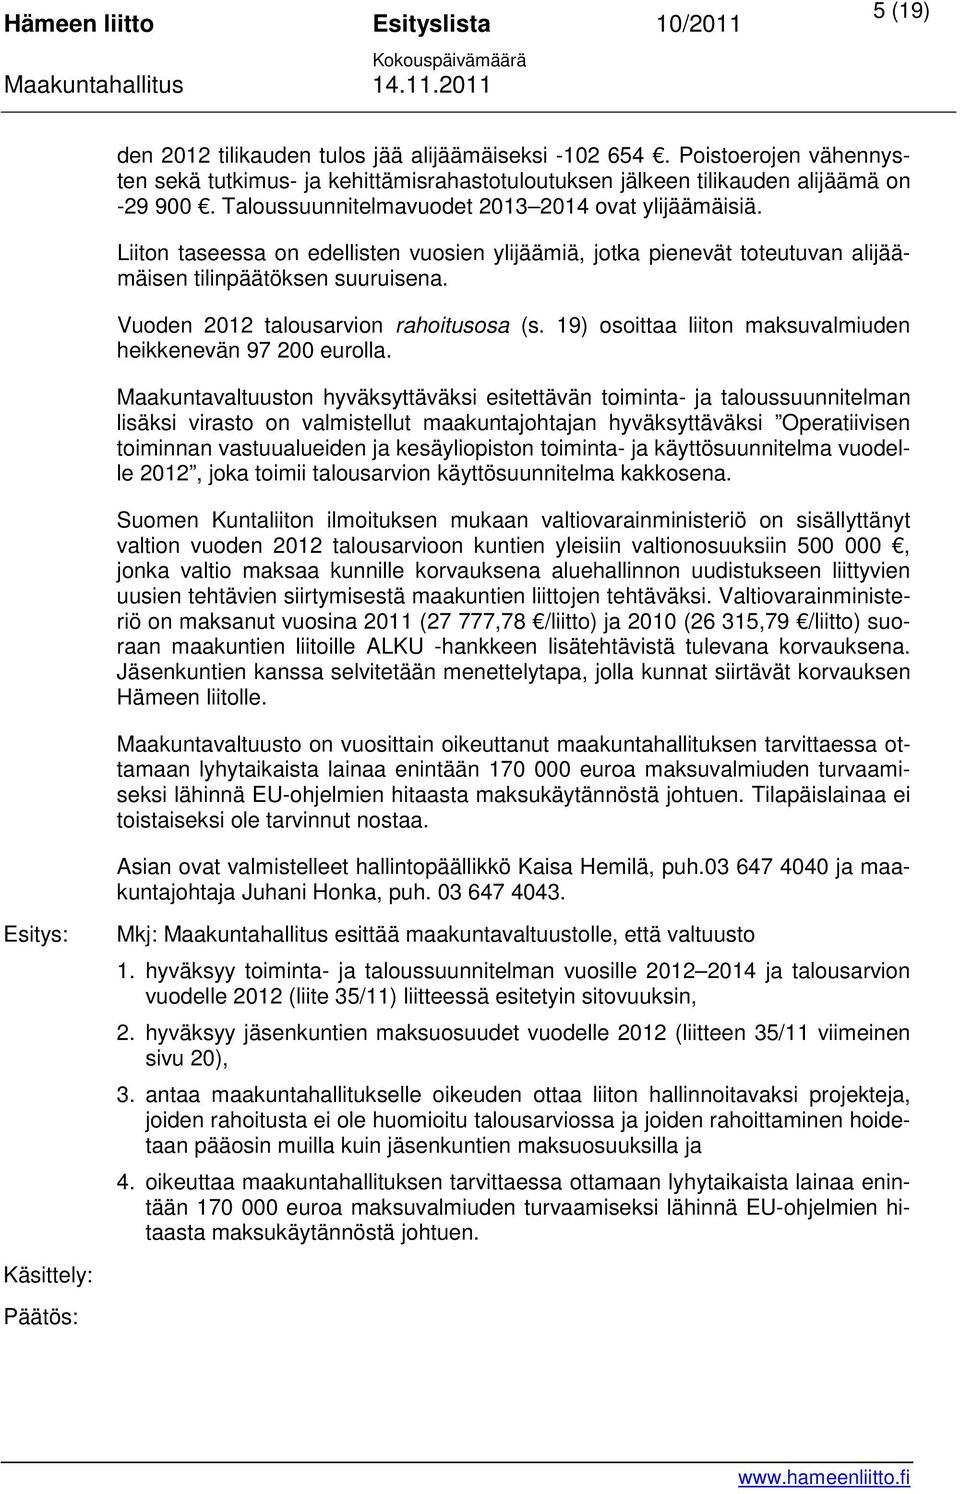 Vuoden 2012 talousarvion rahoitusosa (s. 19) osoittaa liiton maksuvalmiuden heikkenevän 97 200 eurolla.